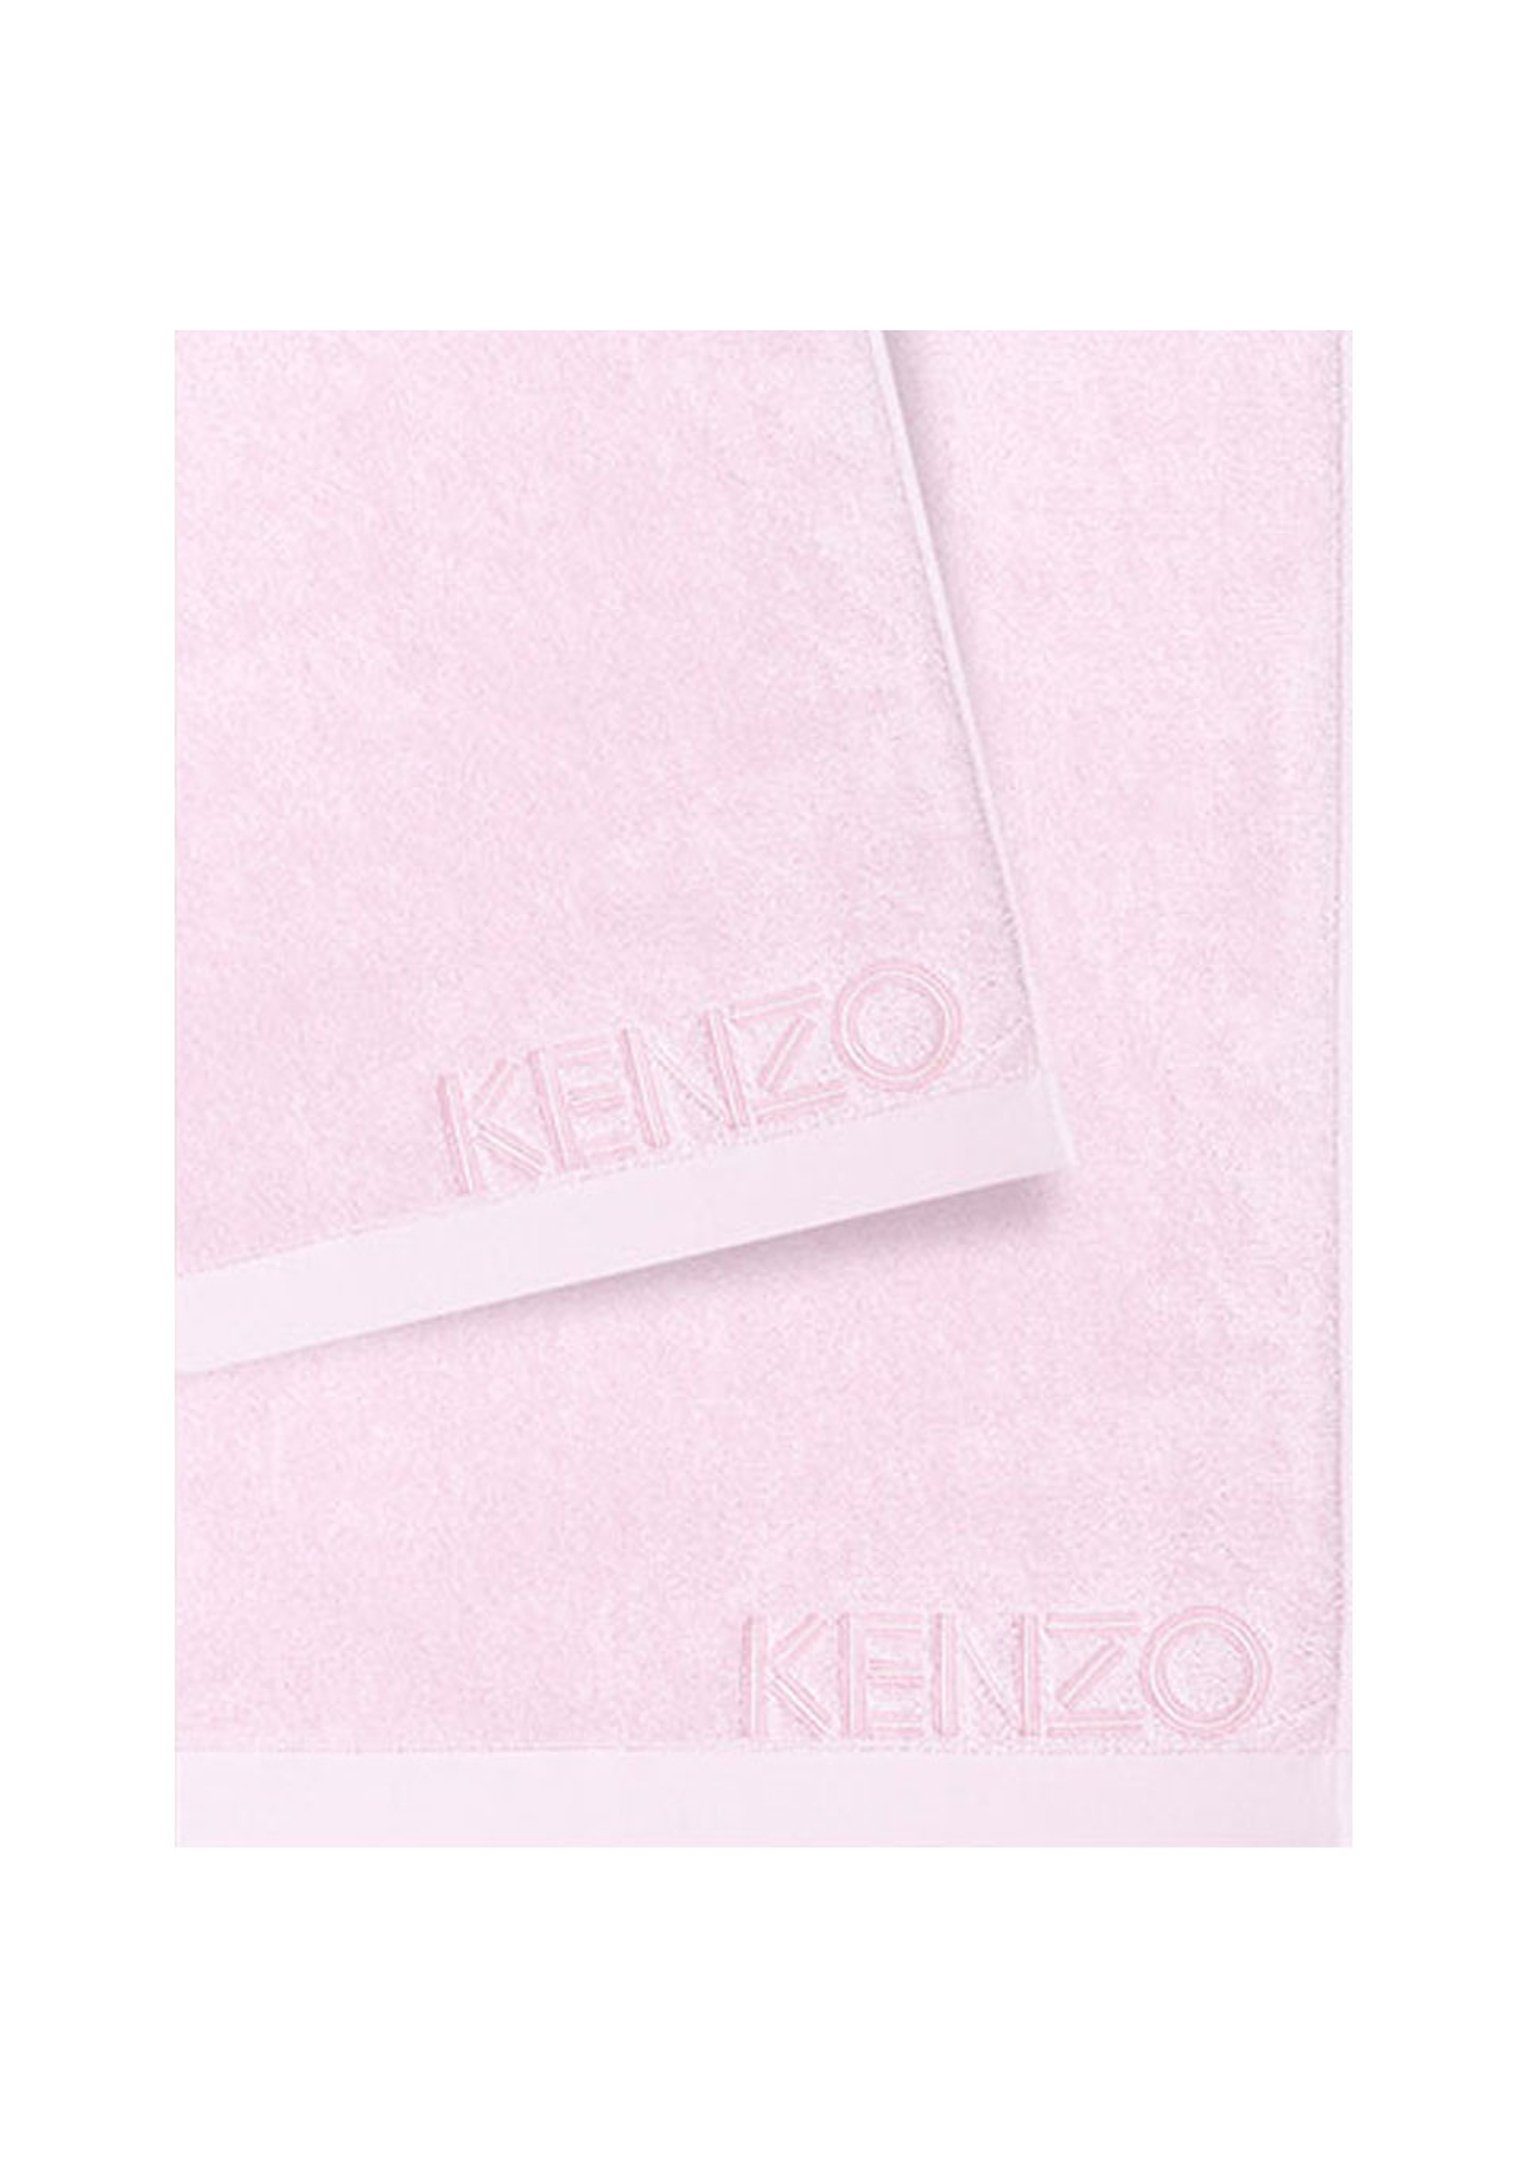 KENZO MAISON Gästehandtücher ICONIC (2tlg), mit 100% Baumwolle, ROSE Design klassischem